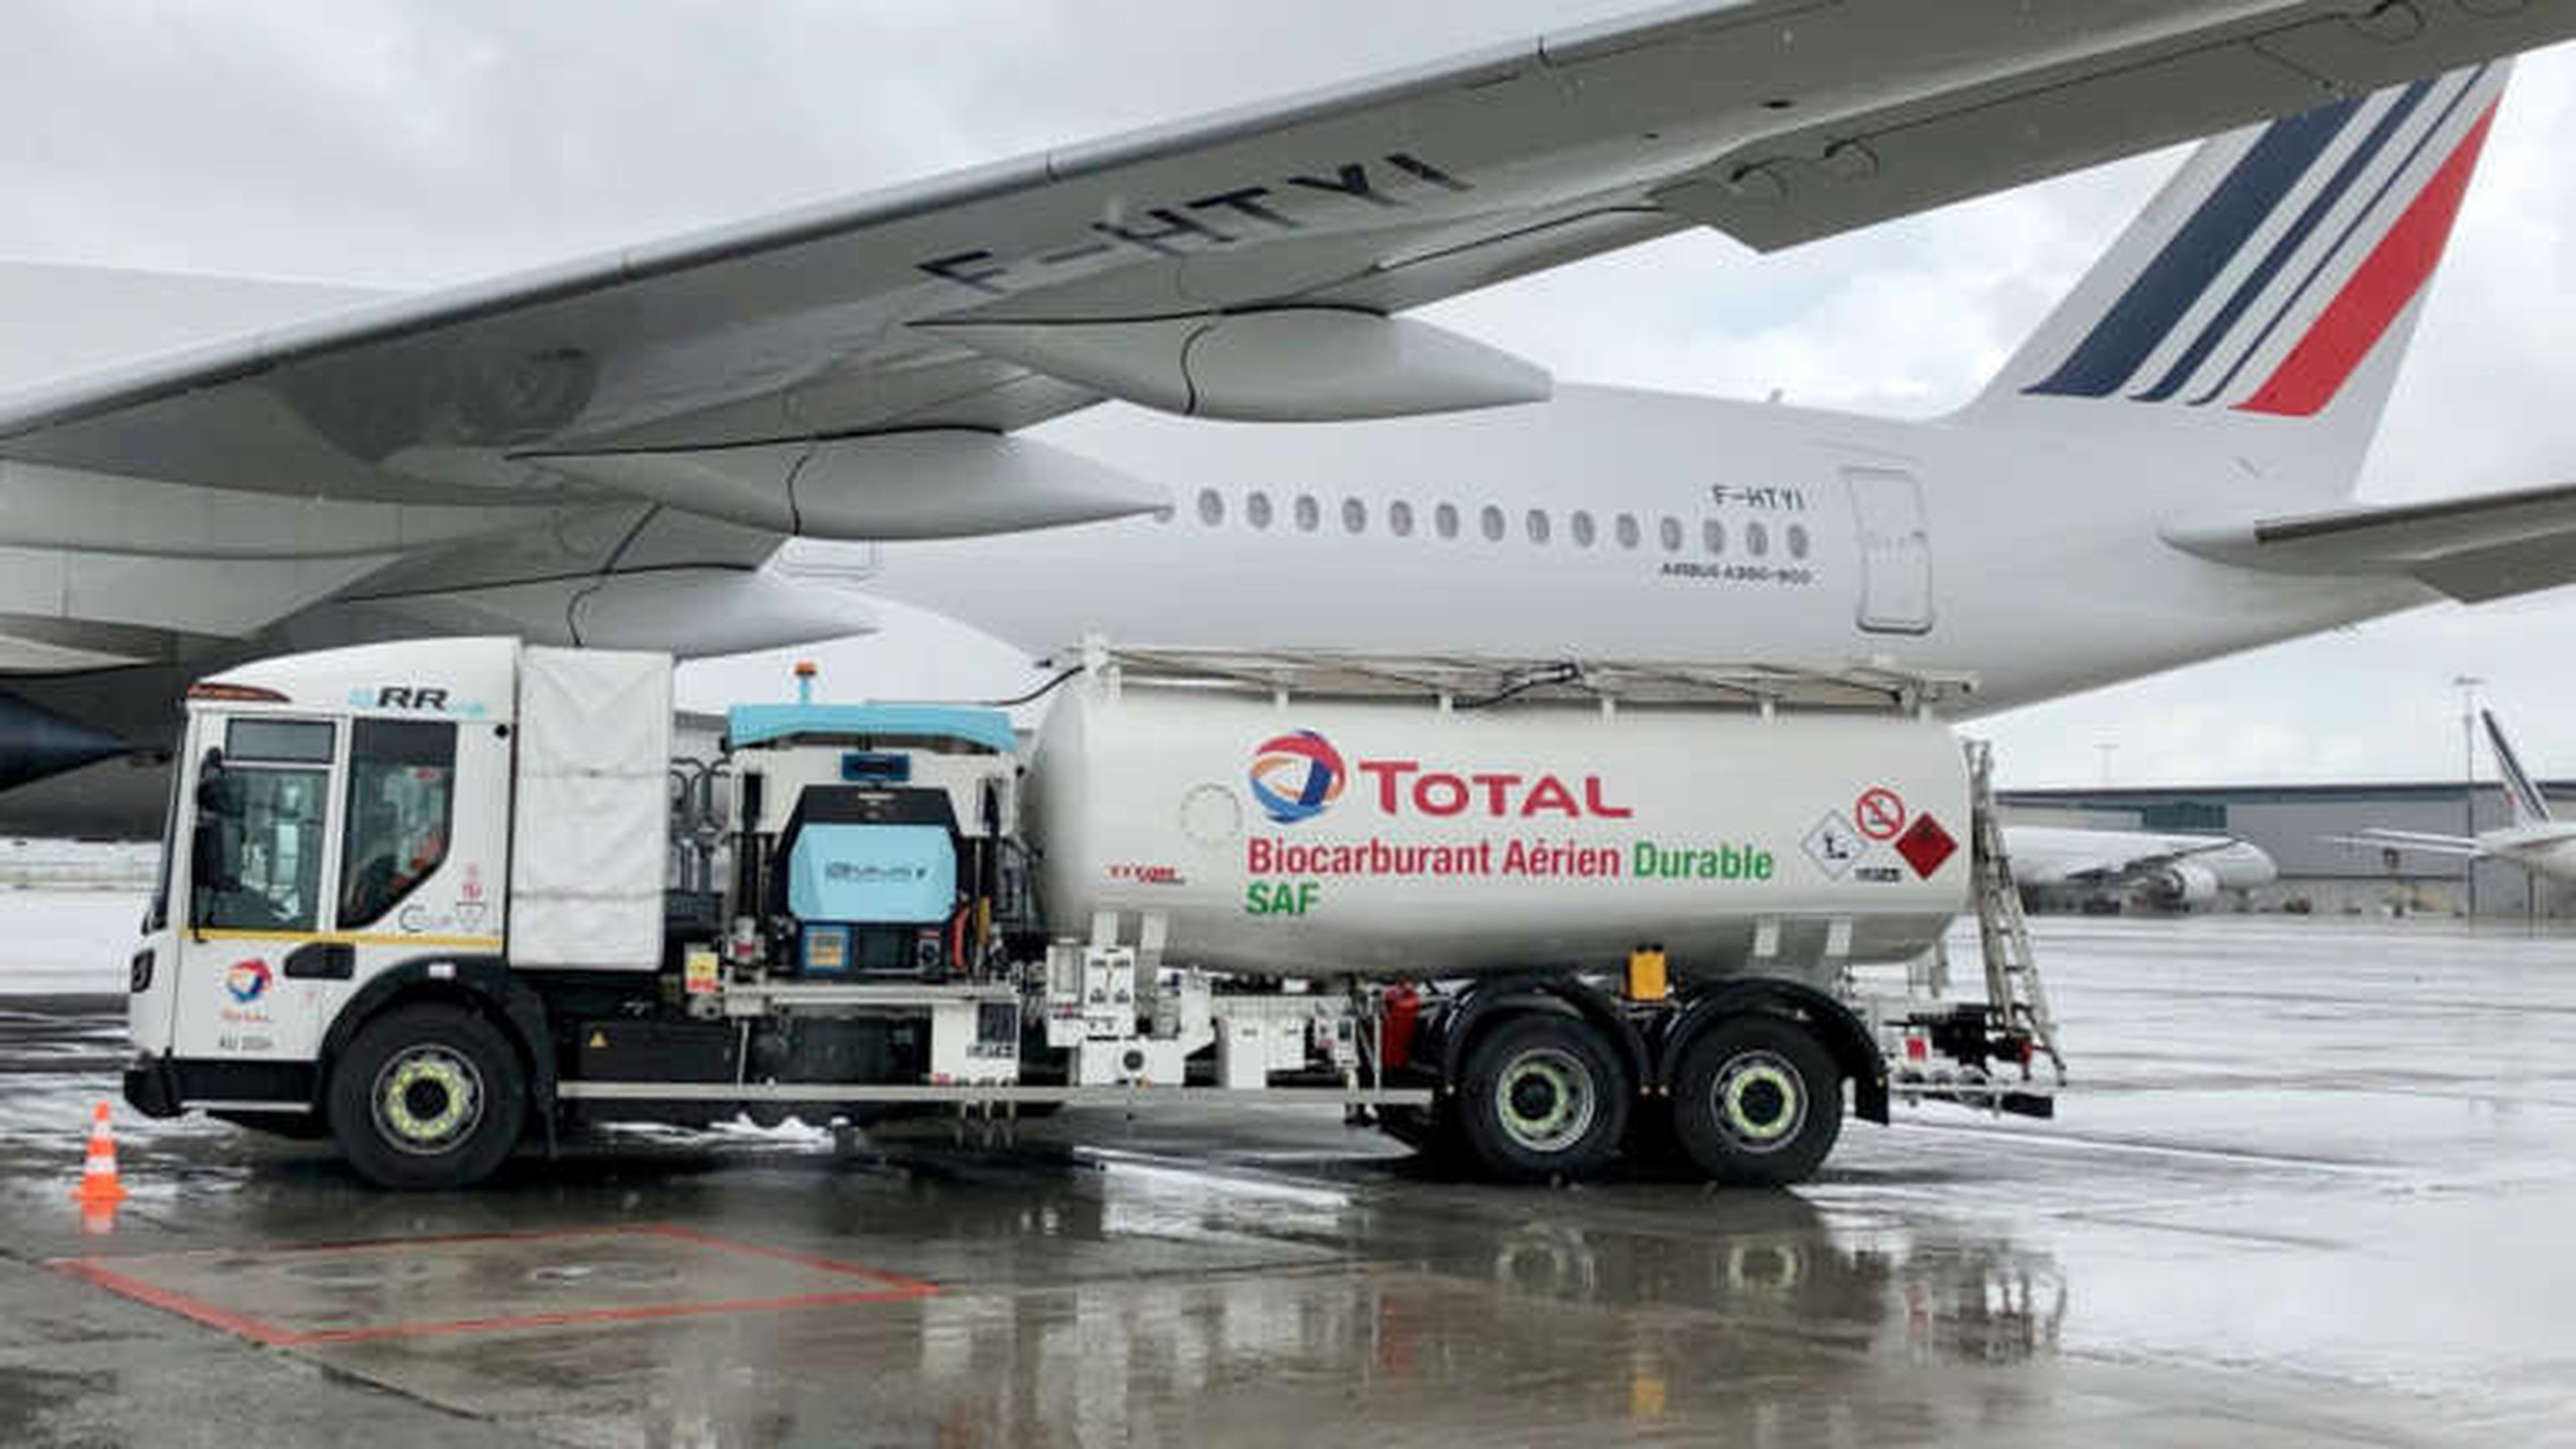 El A350 de Air France cargando biocombustible (Air France)